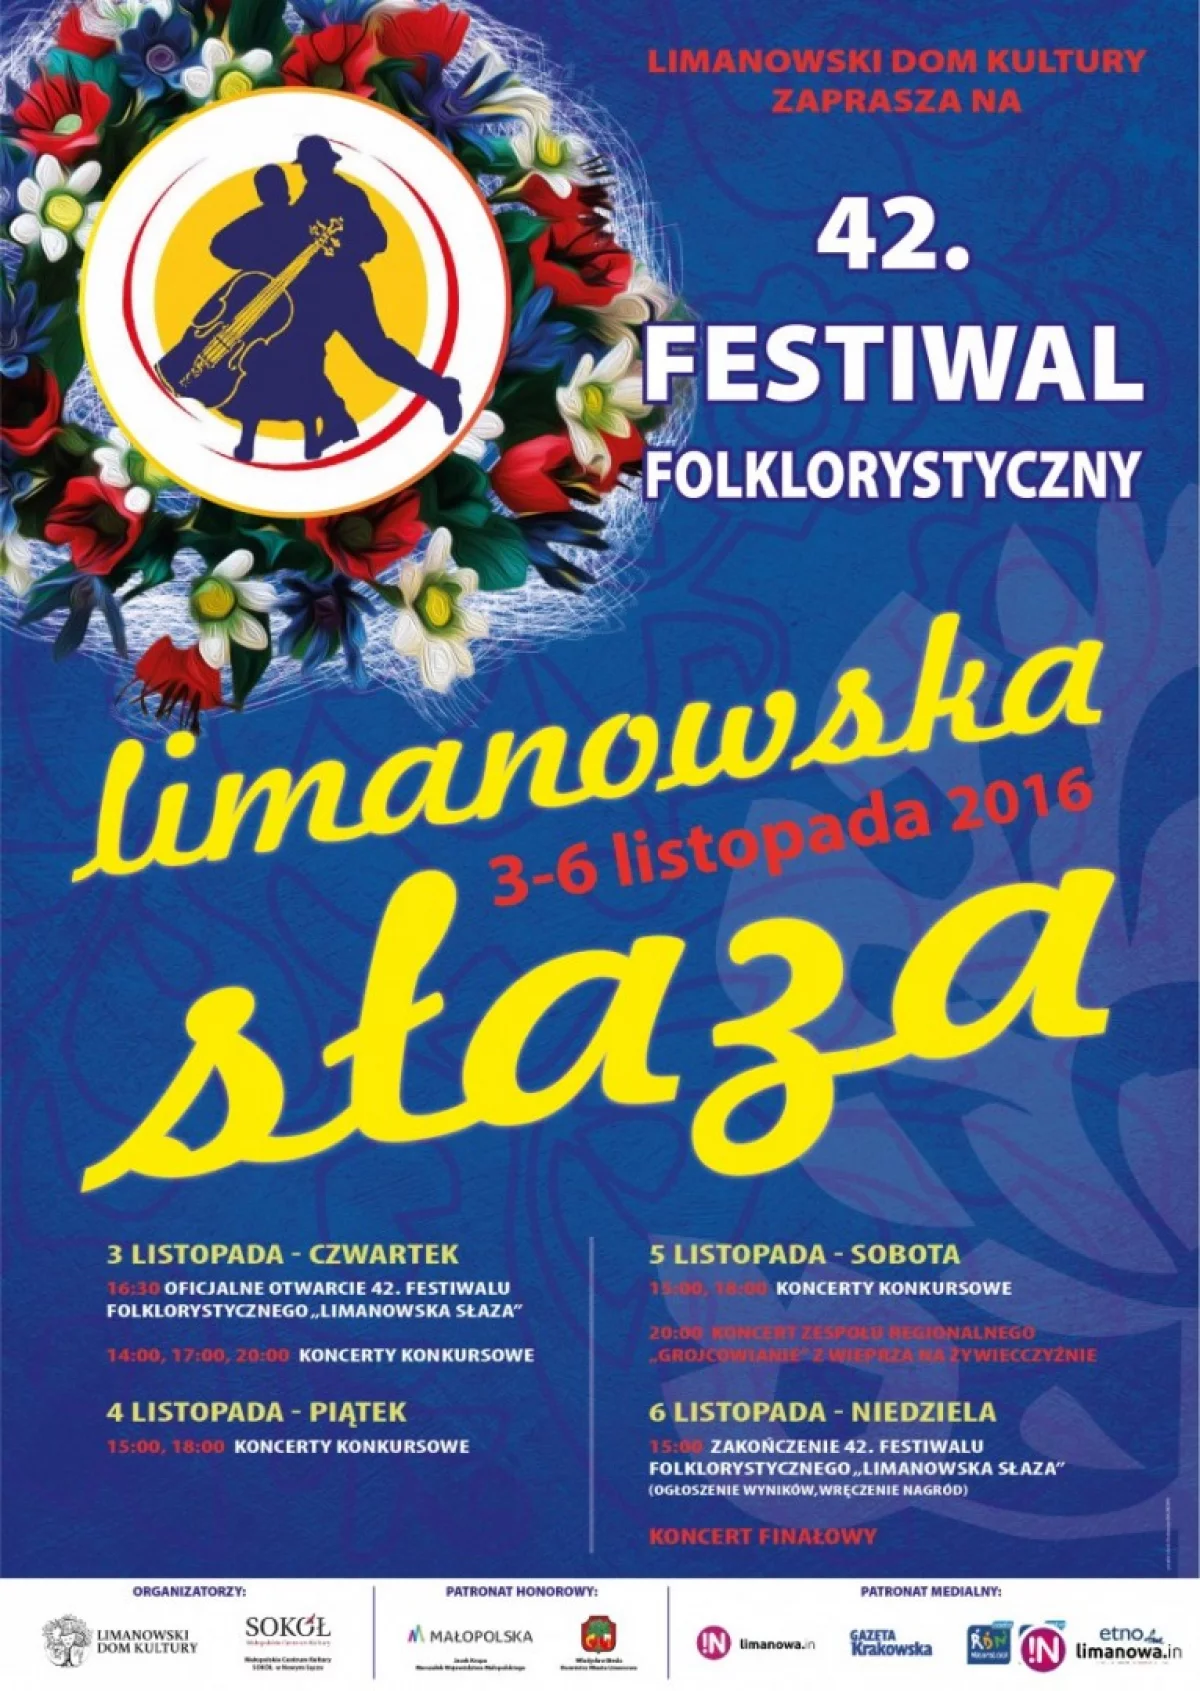 42. Limanowska Słaza - dziś zakończenie festiwalu